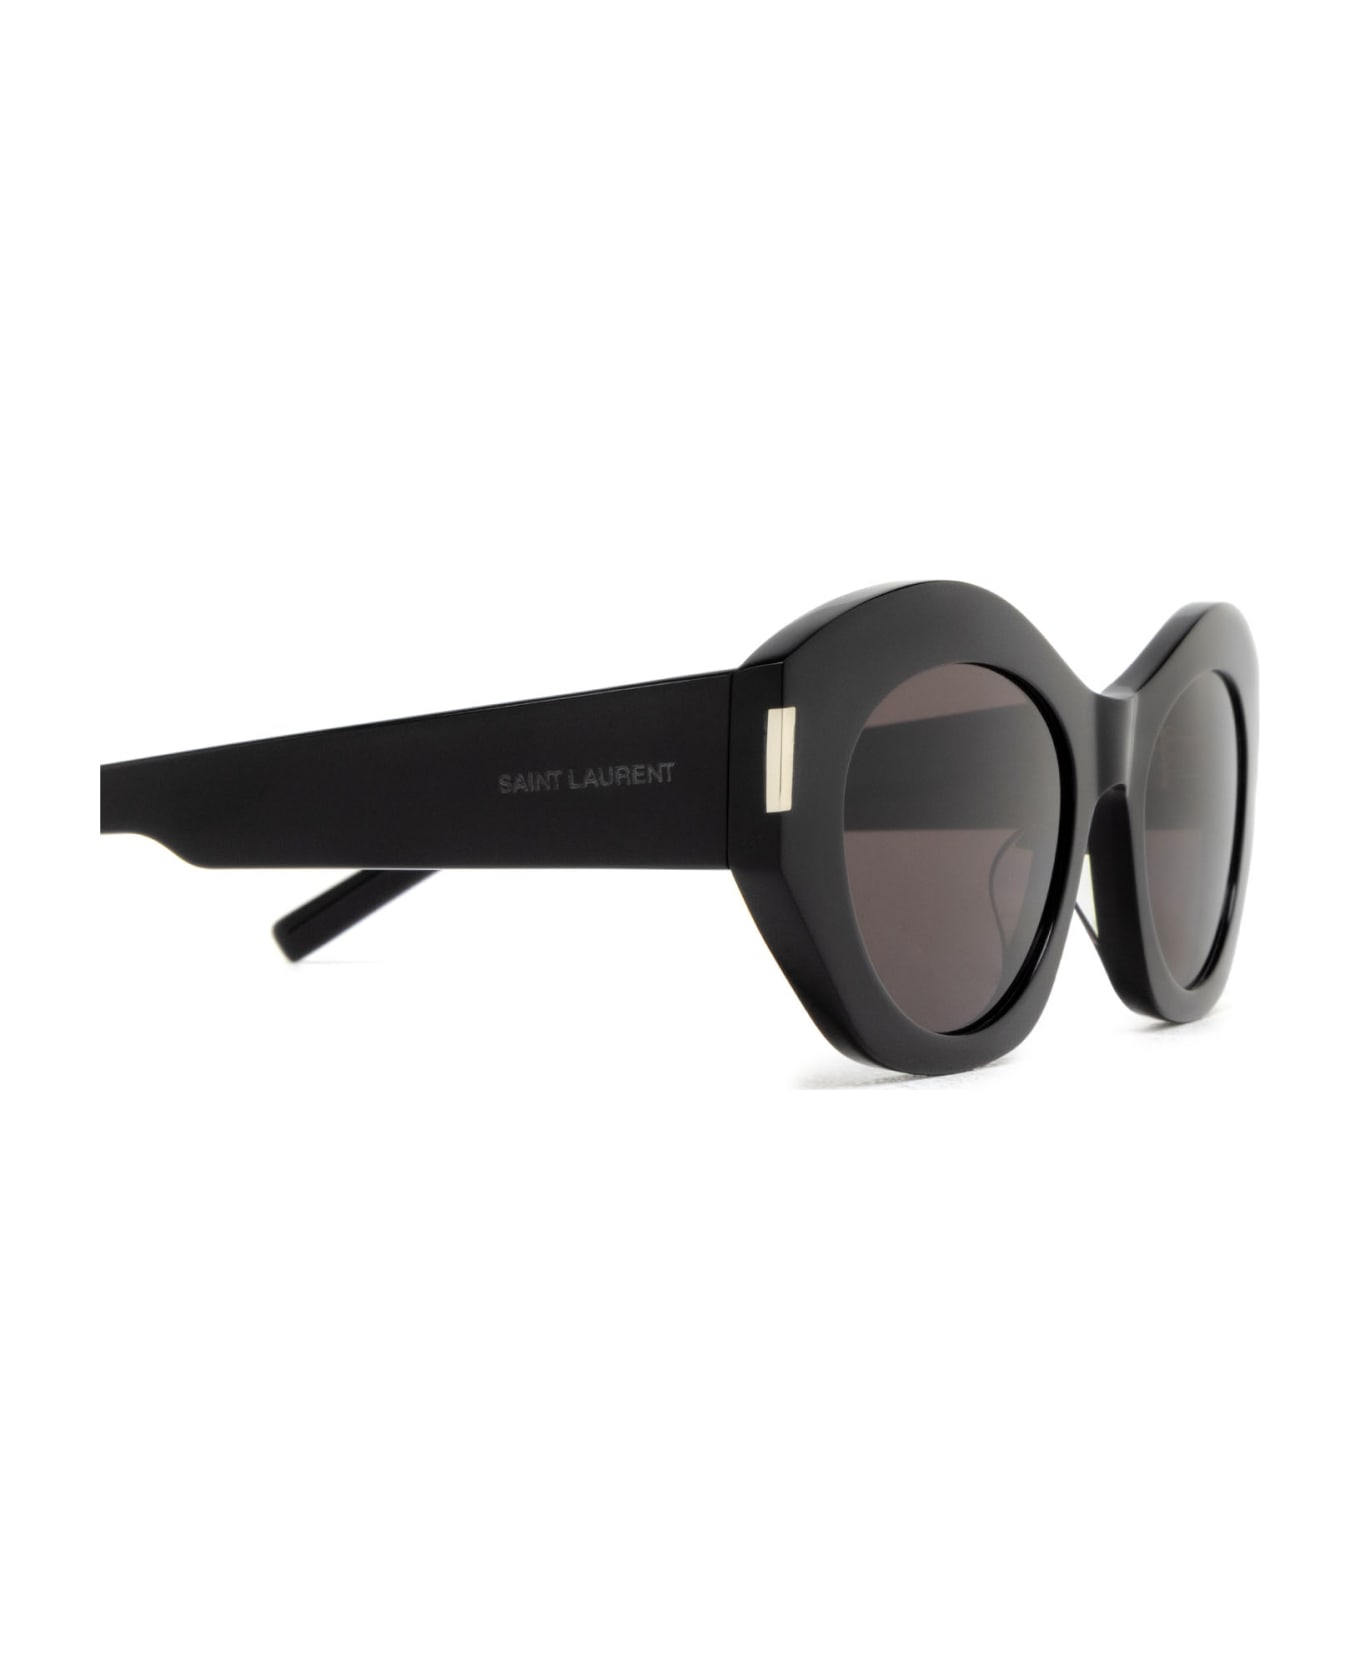 Saint Laurent Eyewear Sl 639 Black Sunglasses - Black